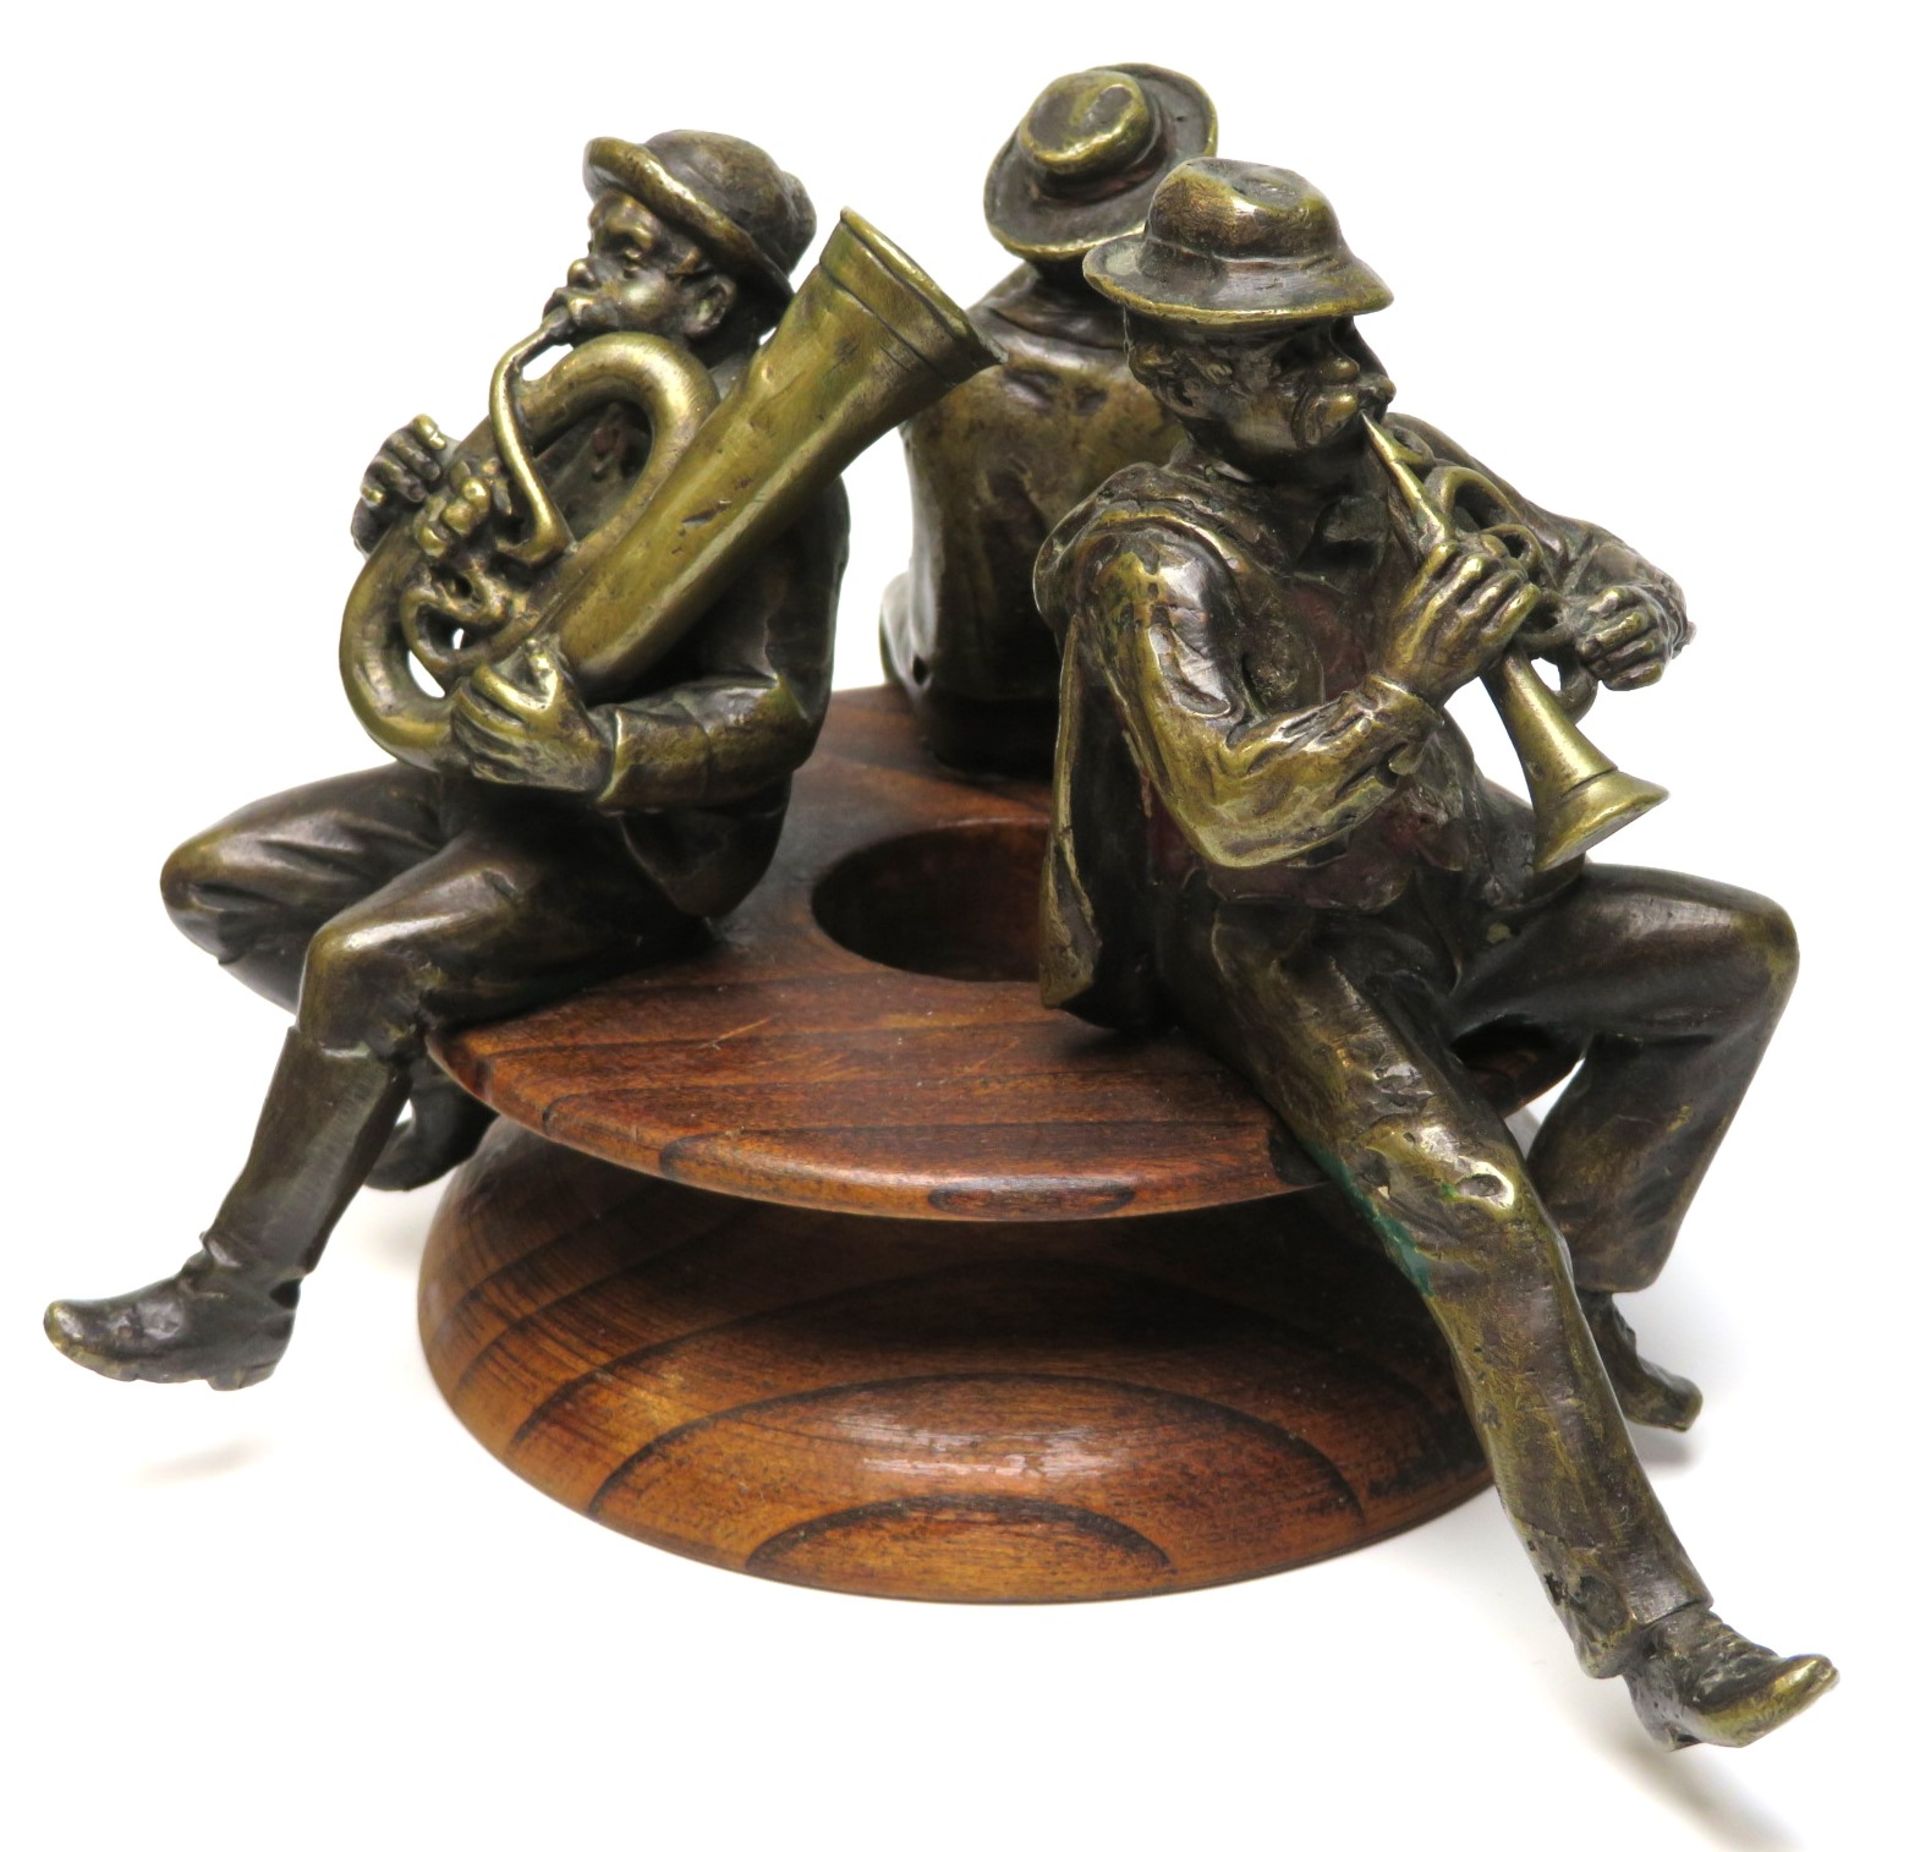 Unbekannt, um 1900, Drei bayrische Musikanten, Bronze, Holzsockel, h 11,5 cm, d 18 cm. - Bild 2 aus 2